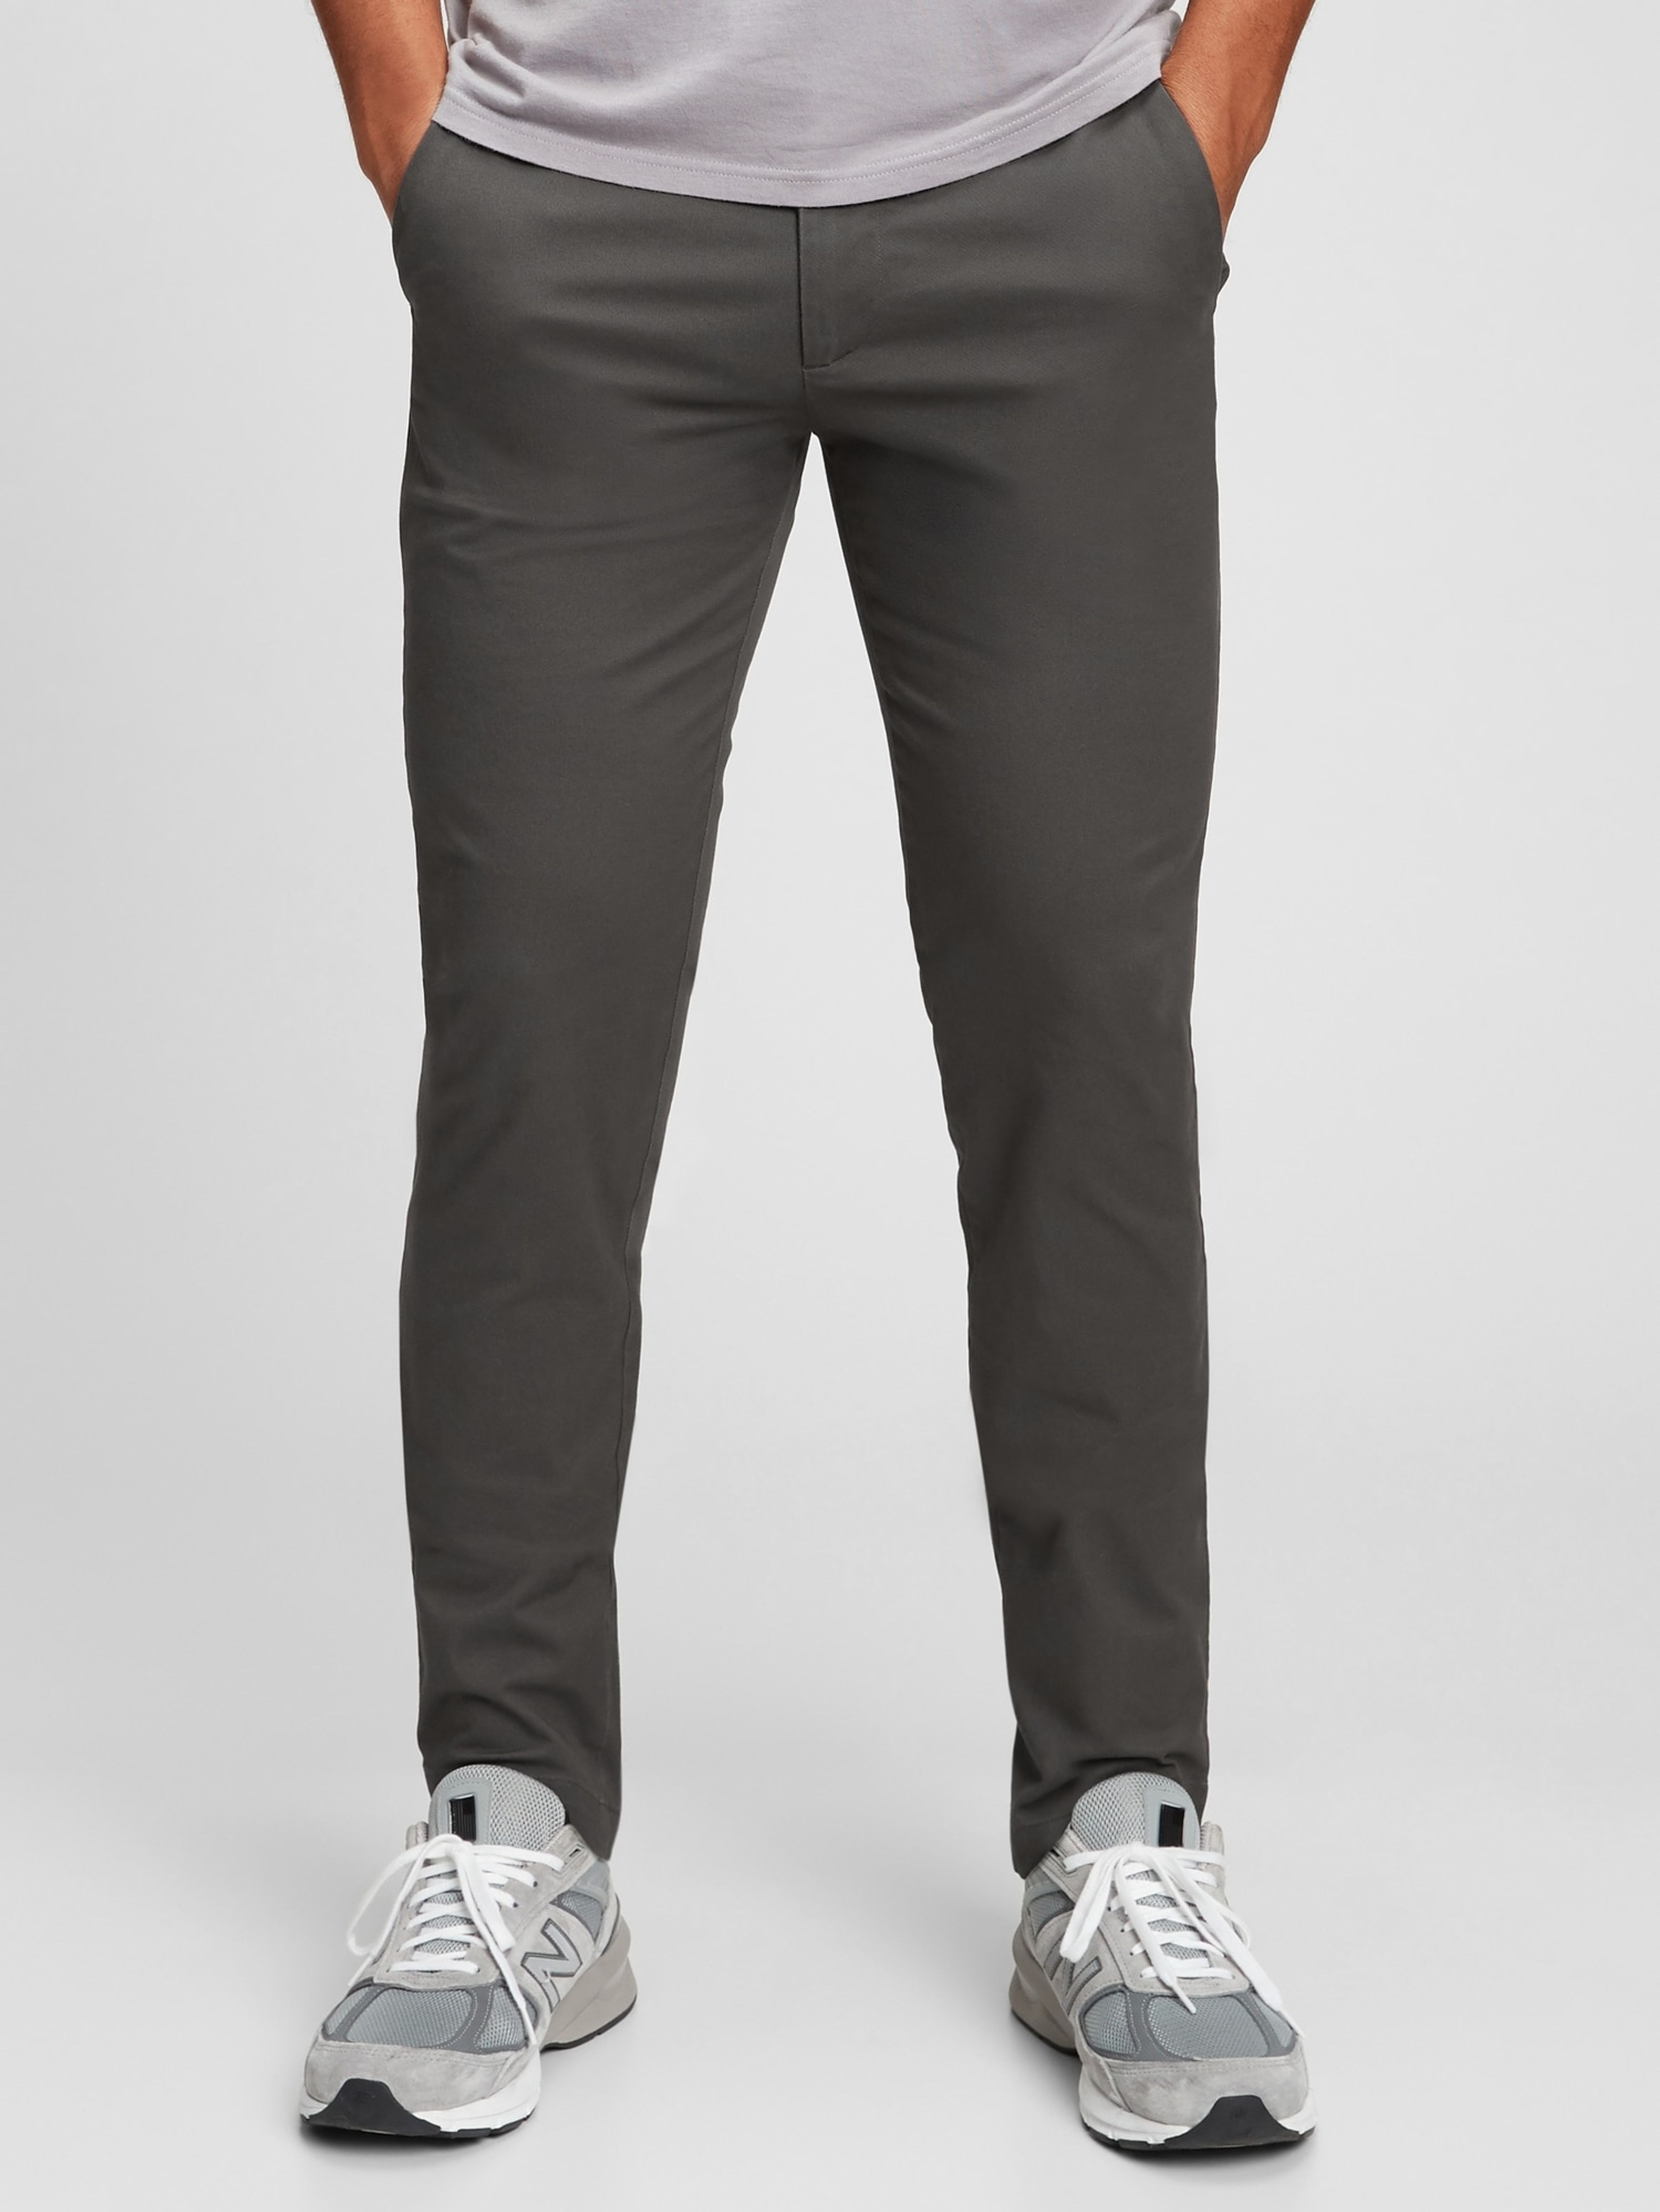 Kalhoty modern khaki skinny